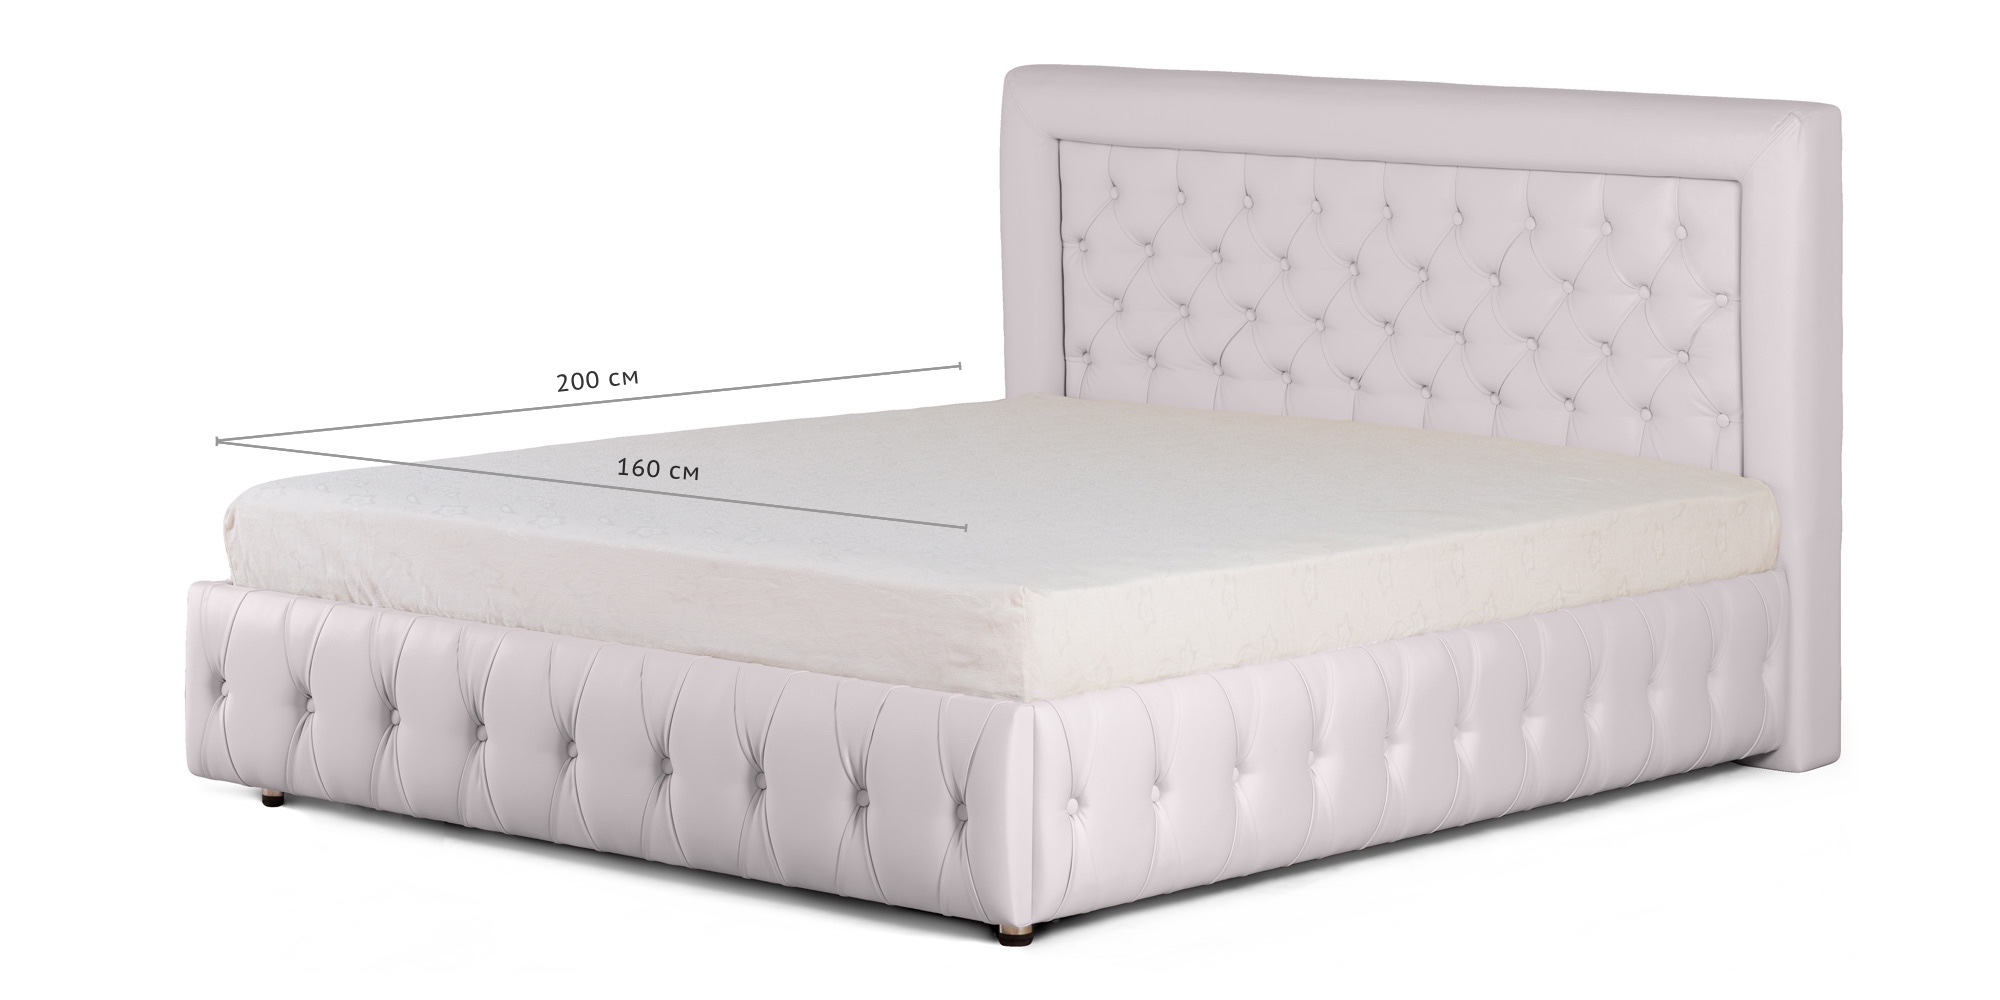 Кровать 160х200 купить спб недорого от производителя. Кровать Биг Бен. Кровать двуспальная моон. Кровати 140*200 моон. Аскона кровать двуспальная 140х200.